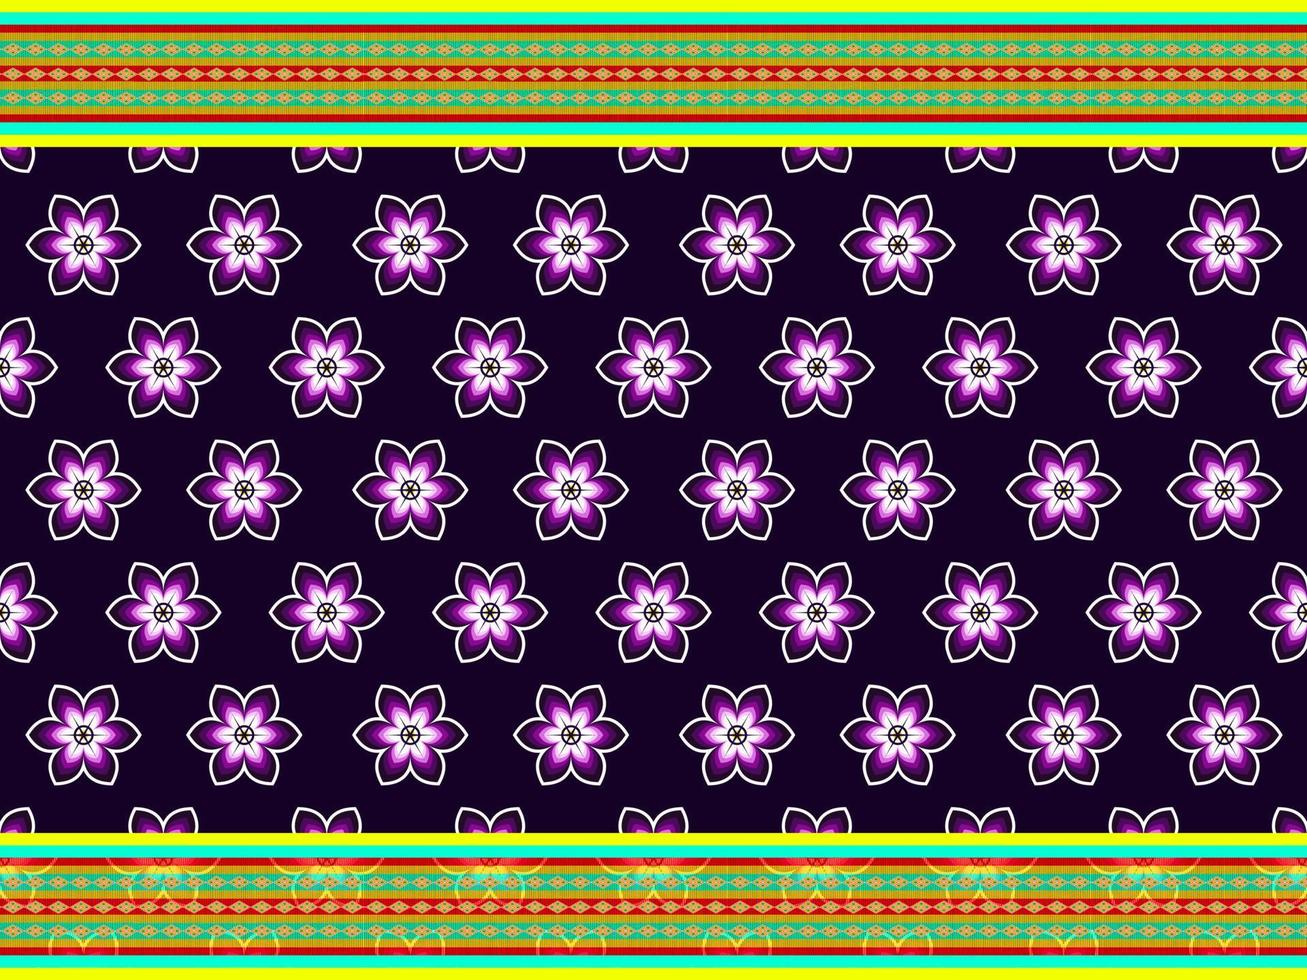 design tradicional de padrão ikat oriental étnico geométrico para plano de fundo, tapete, papel de parede, roupas, embrulho, batik, tecido, ilustração vetorial. vetor